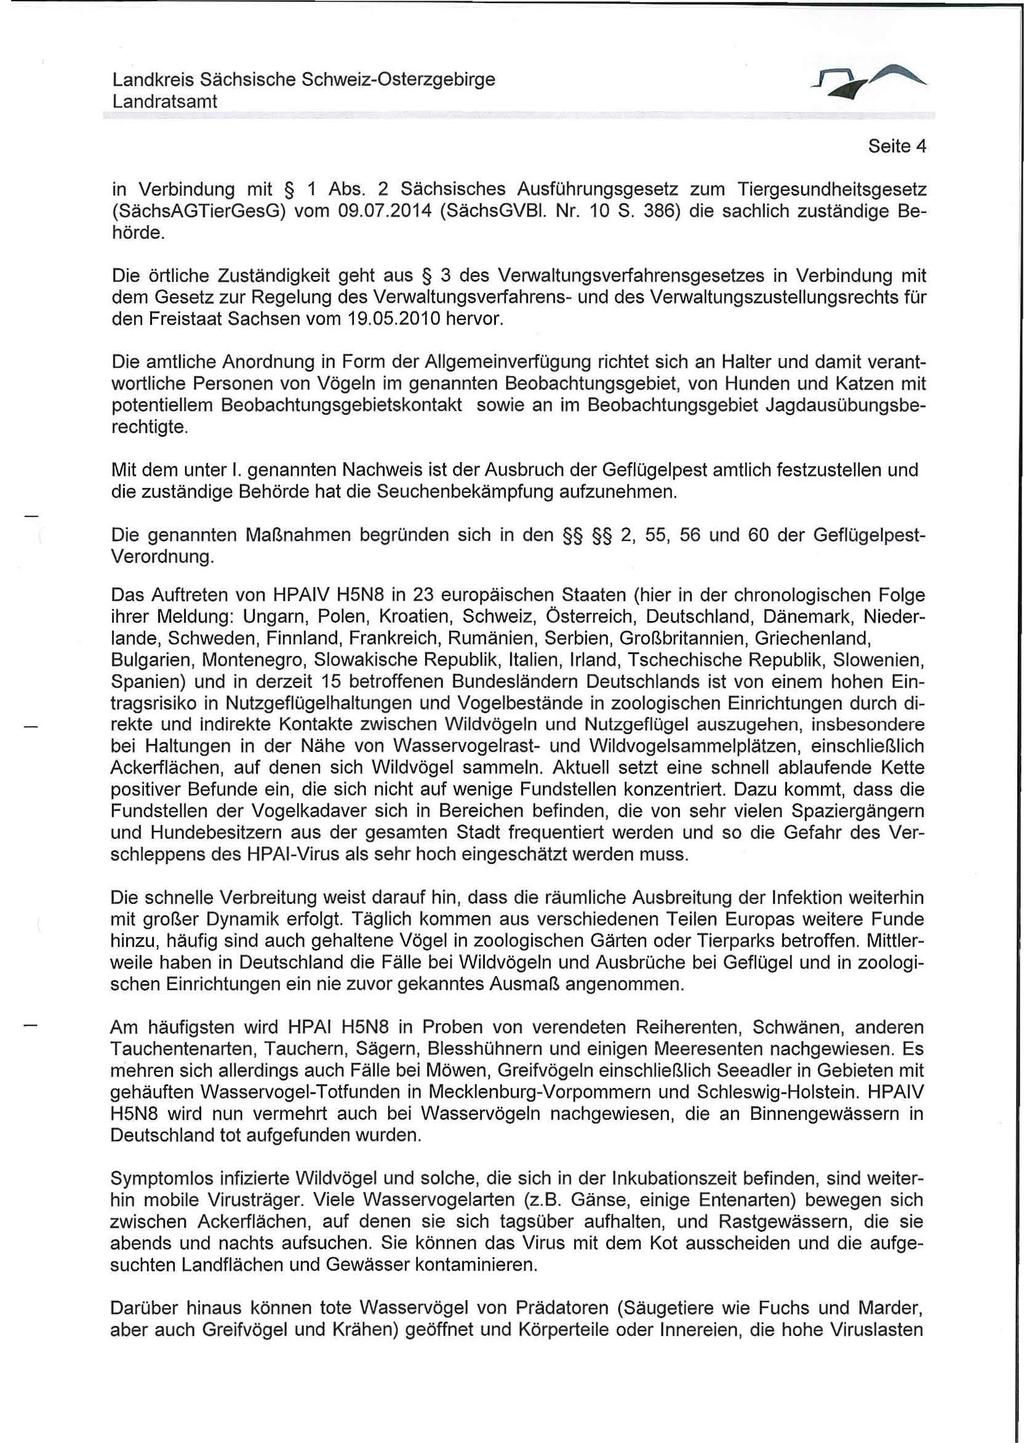 Seite 4 in Verbindung mit 1 Abs. 2 Sächsisches Ausführungsgesetz zum Tiergesundheitsgesetz (SächsAGTierGesG) vom 09.07.2014 (SächsGVBI. Nr. 10 S. 386) die sachlich zuständige Behörde.